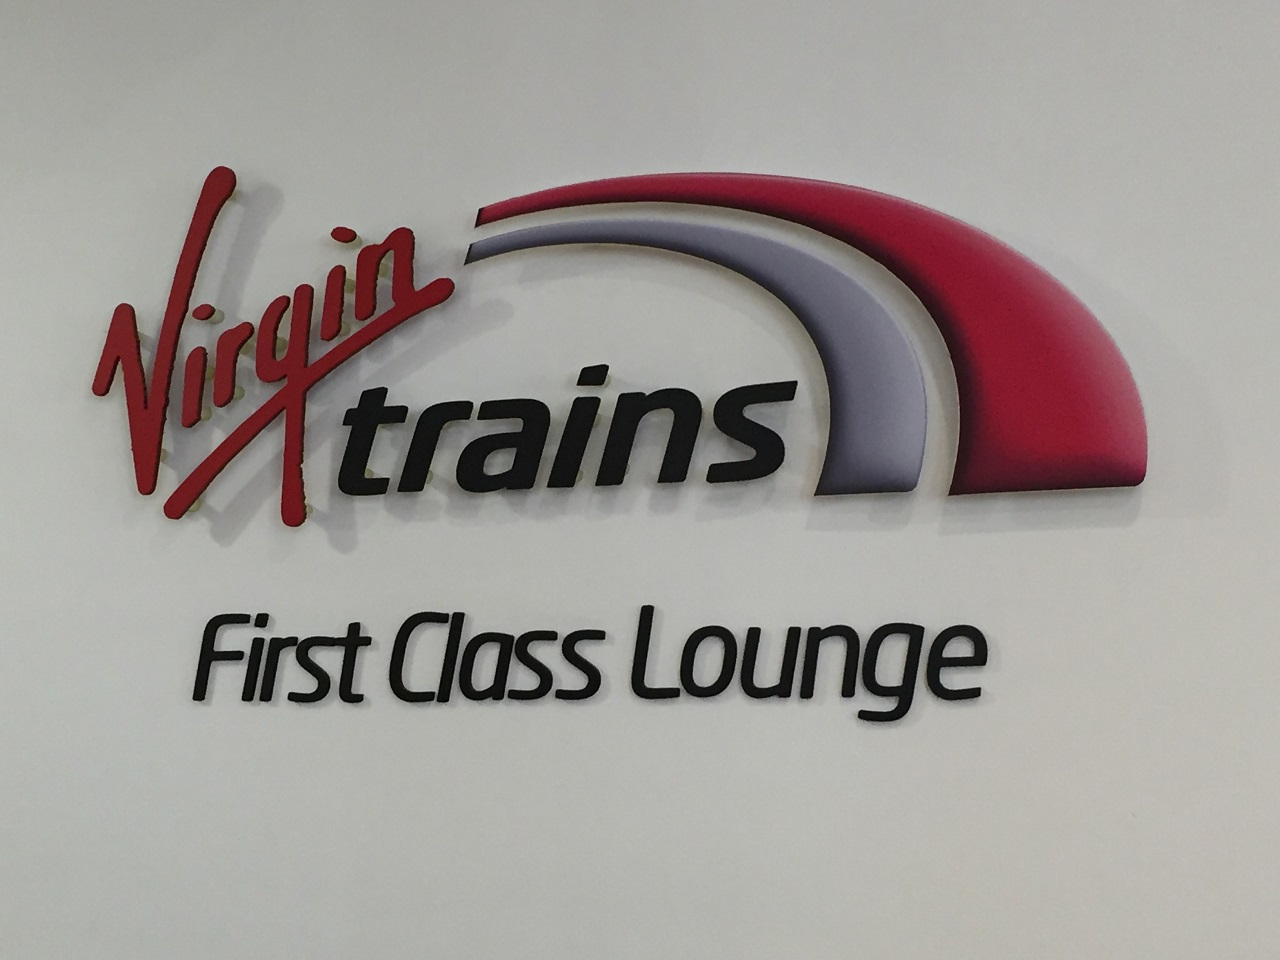 Virgin East Coast First Class Lounge